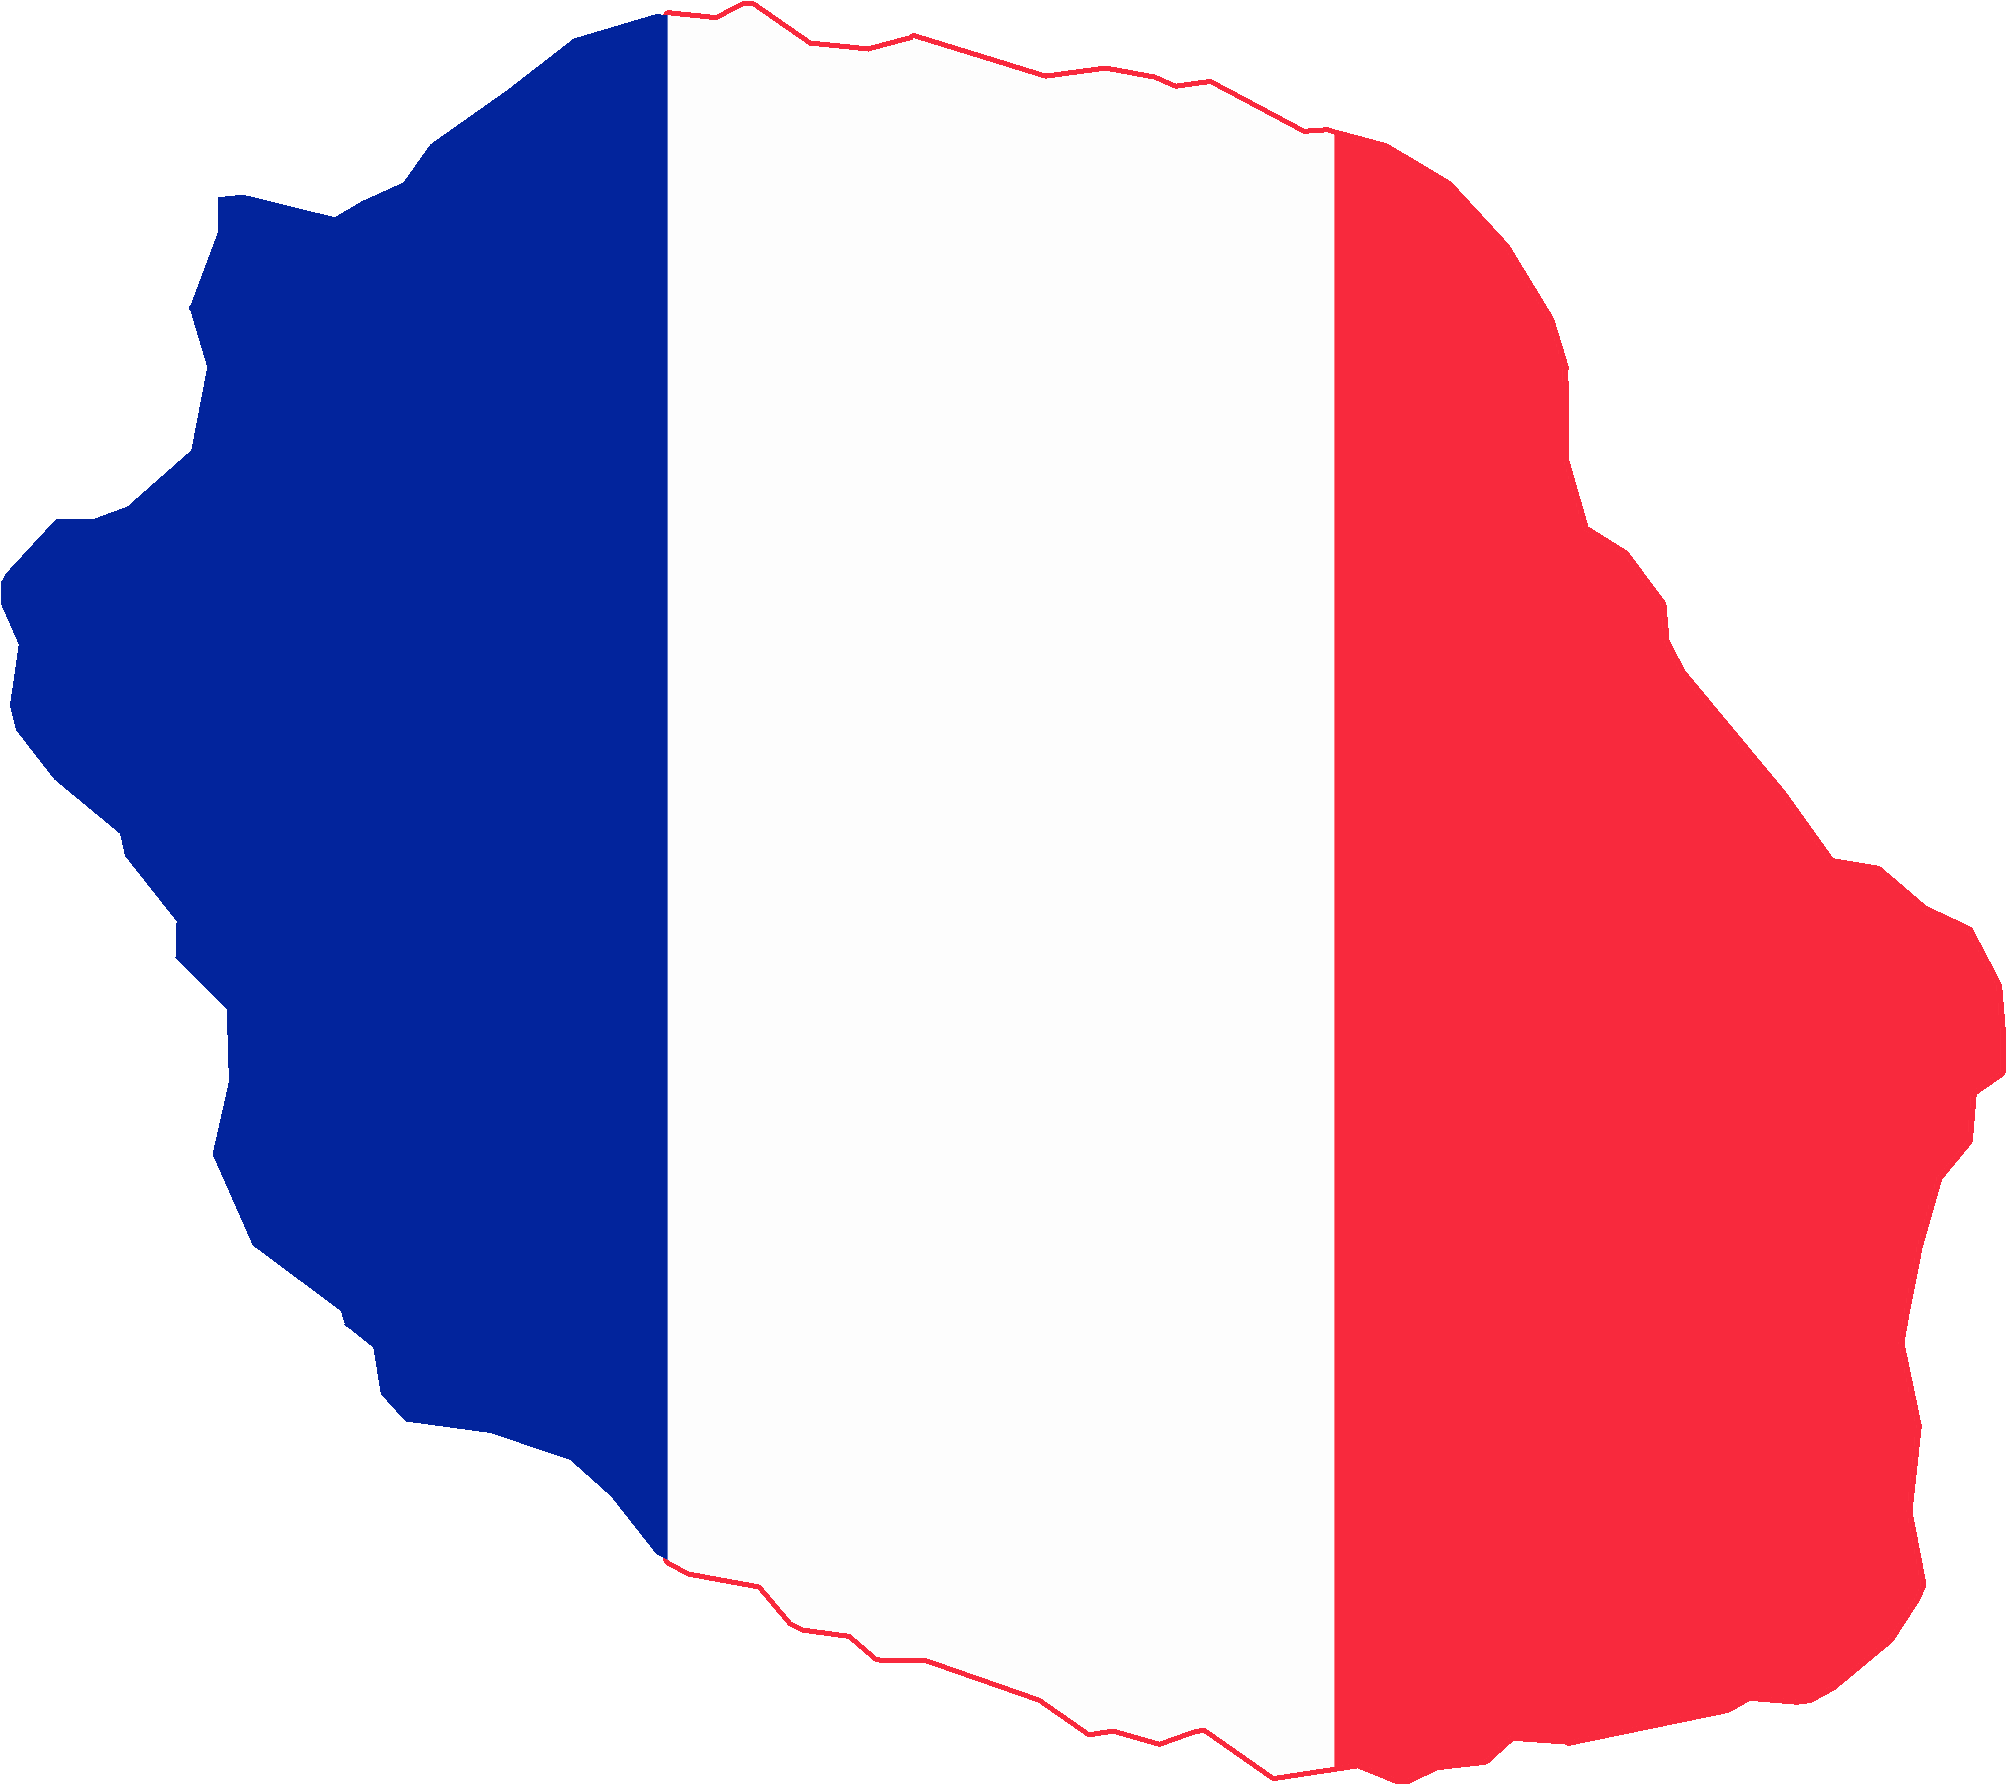 France Flag Png 16, Buy Clip Art - France Flag Png 16, Buy Clip Art (2006x1784)